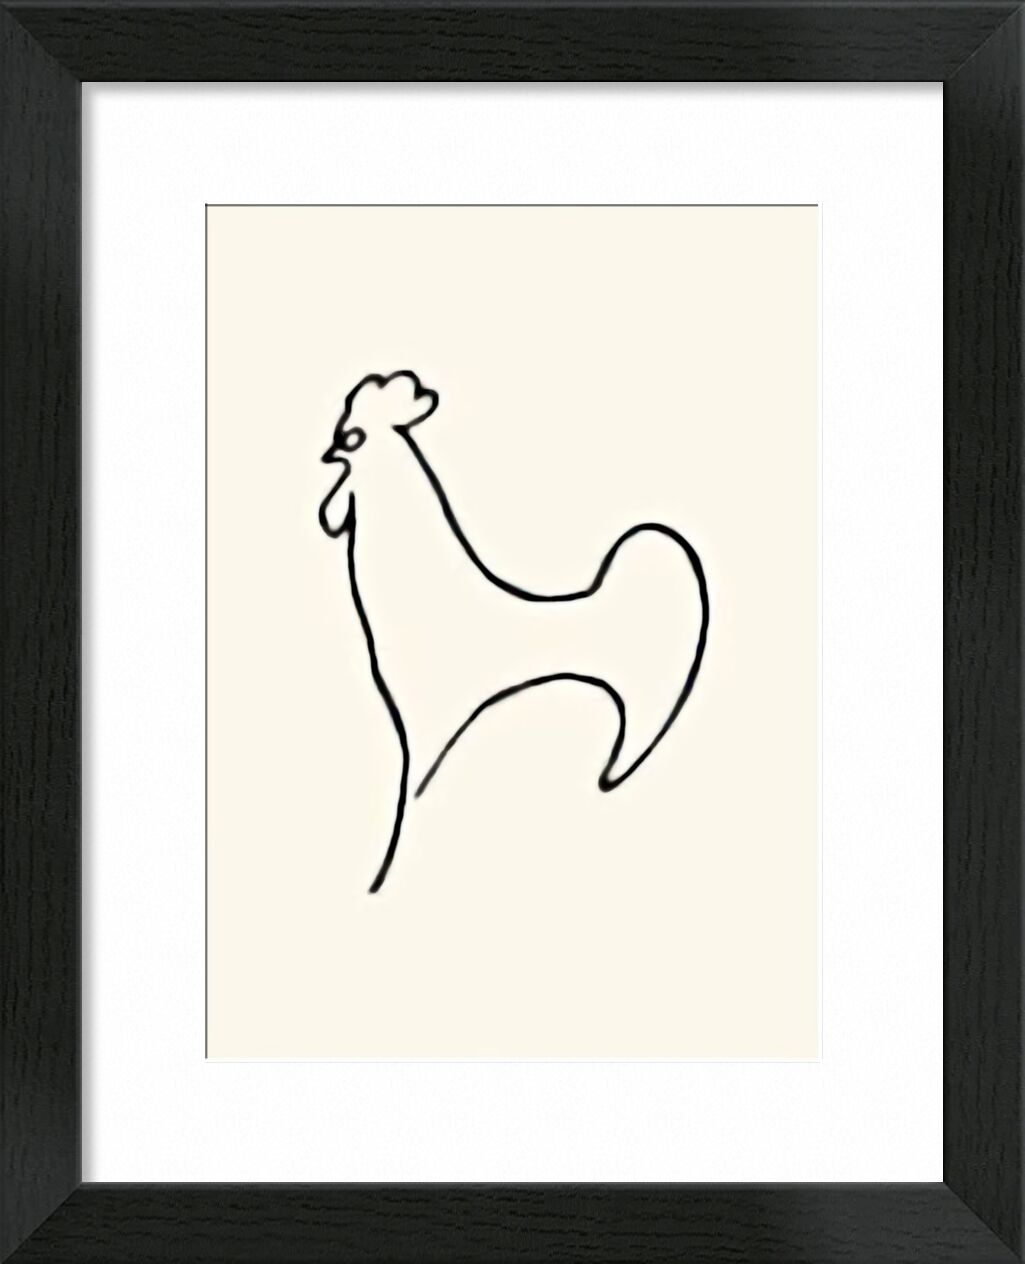 Coq-Detail - Picasso von Bildende Kunst, Prodi Art, Strichzeichnung, Zeichnung, Hahn, Picasso